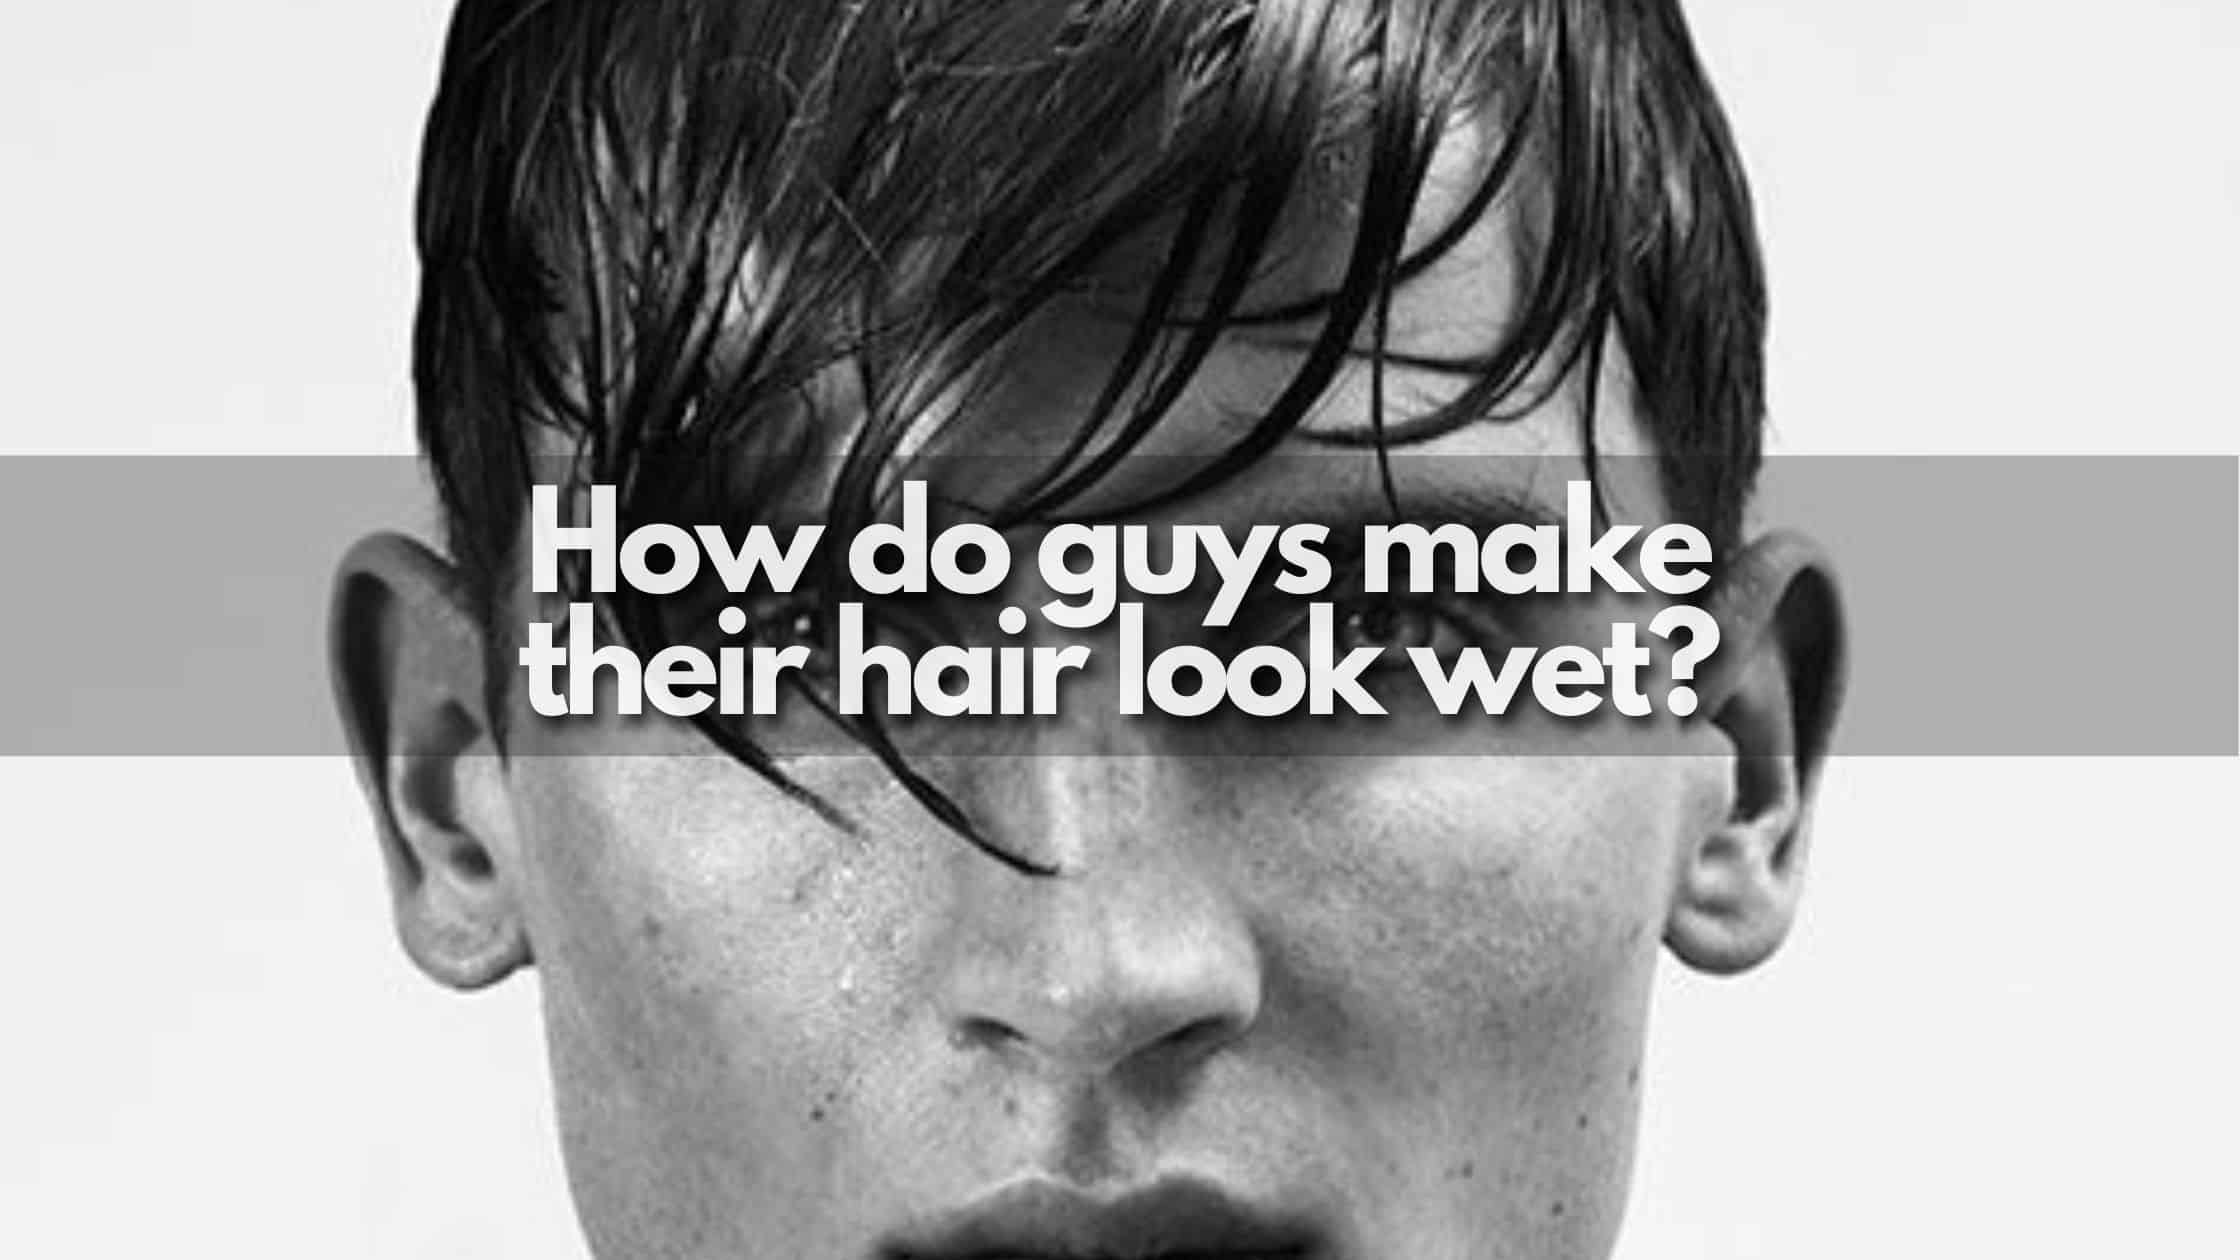 How do guys make their hair look wet? - The Hair Trend